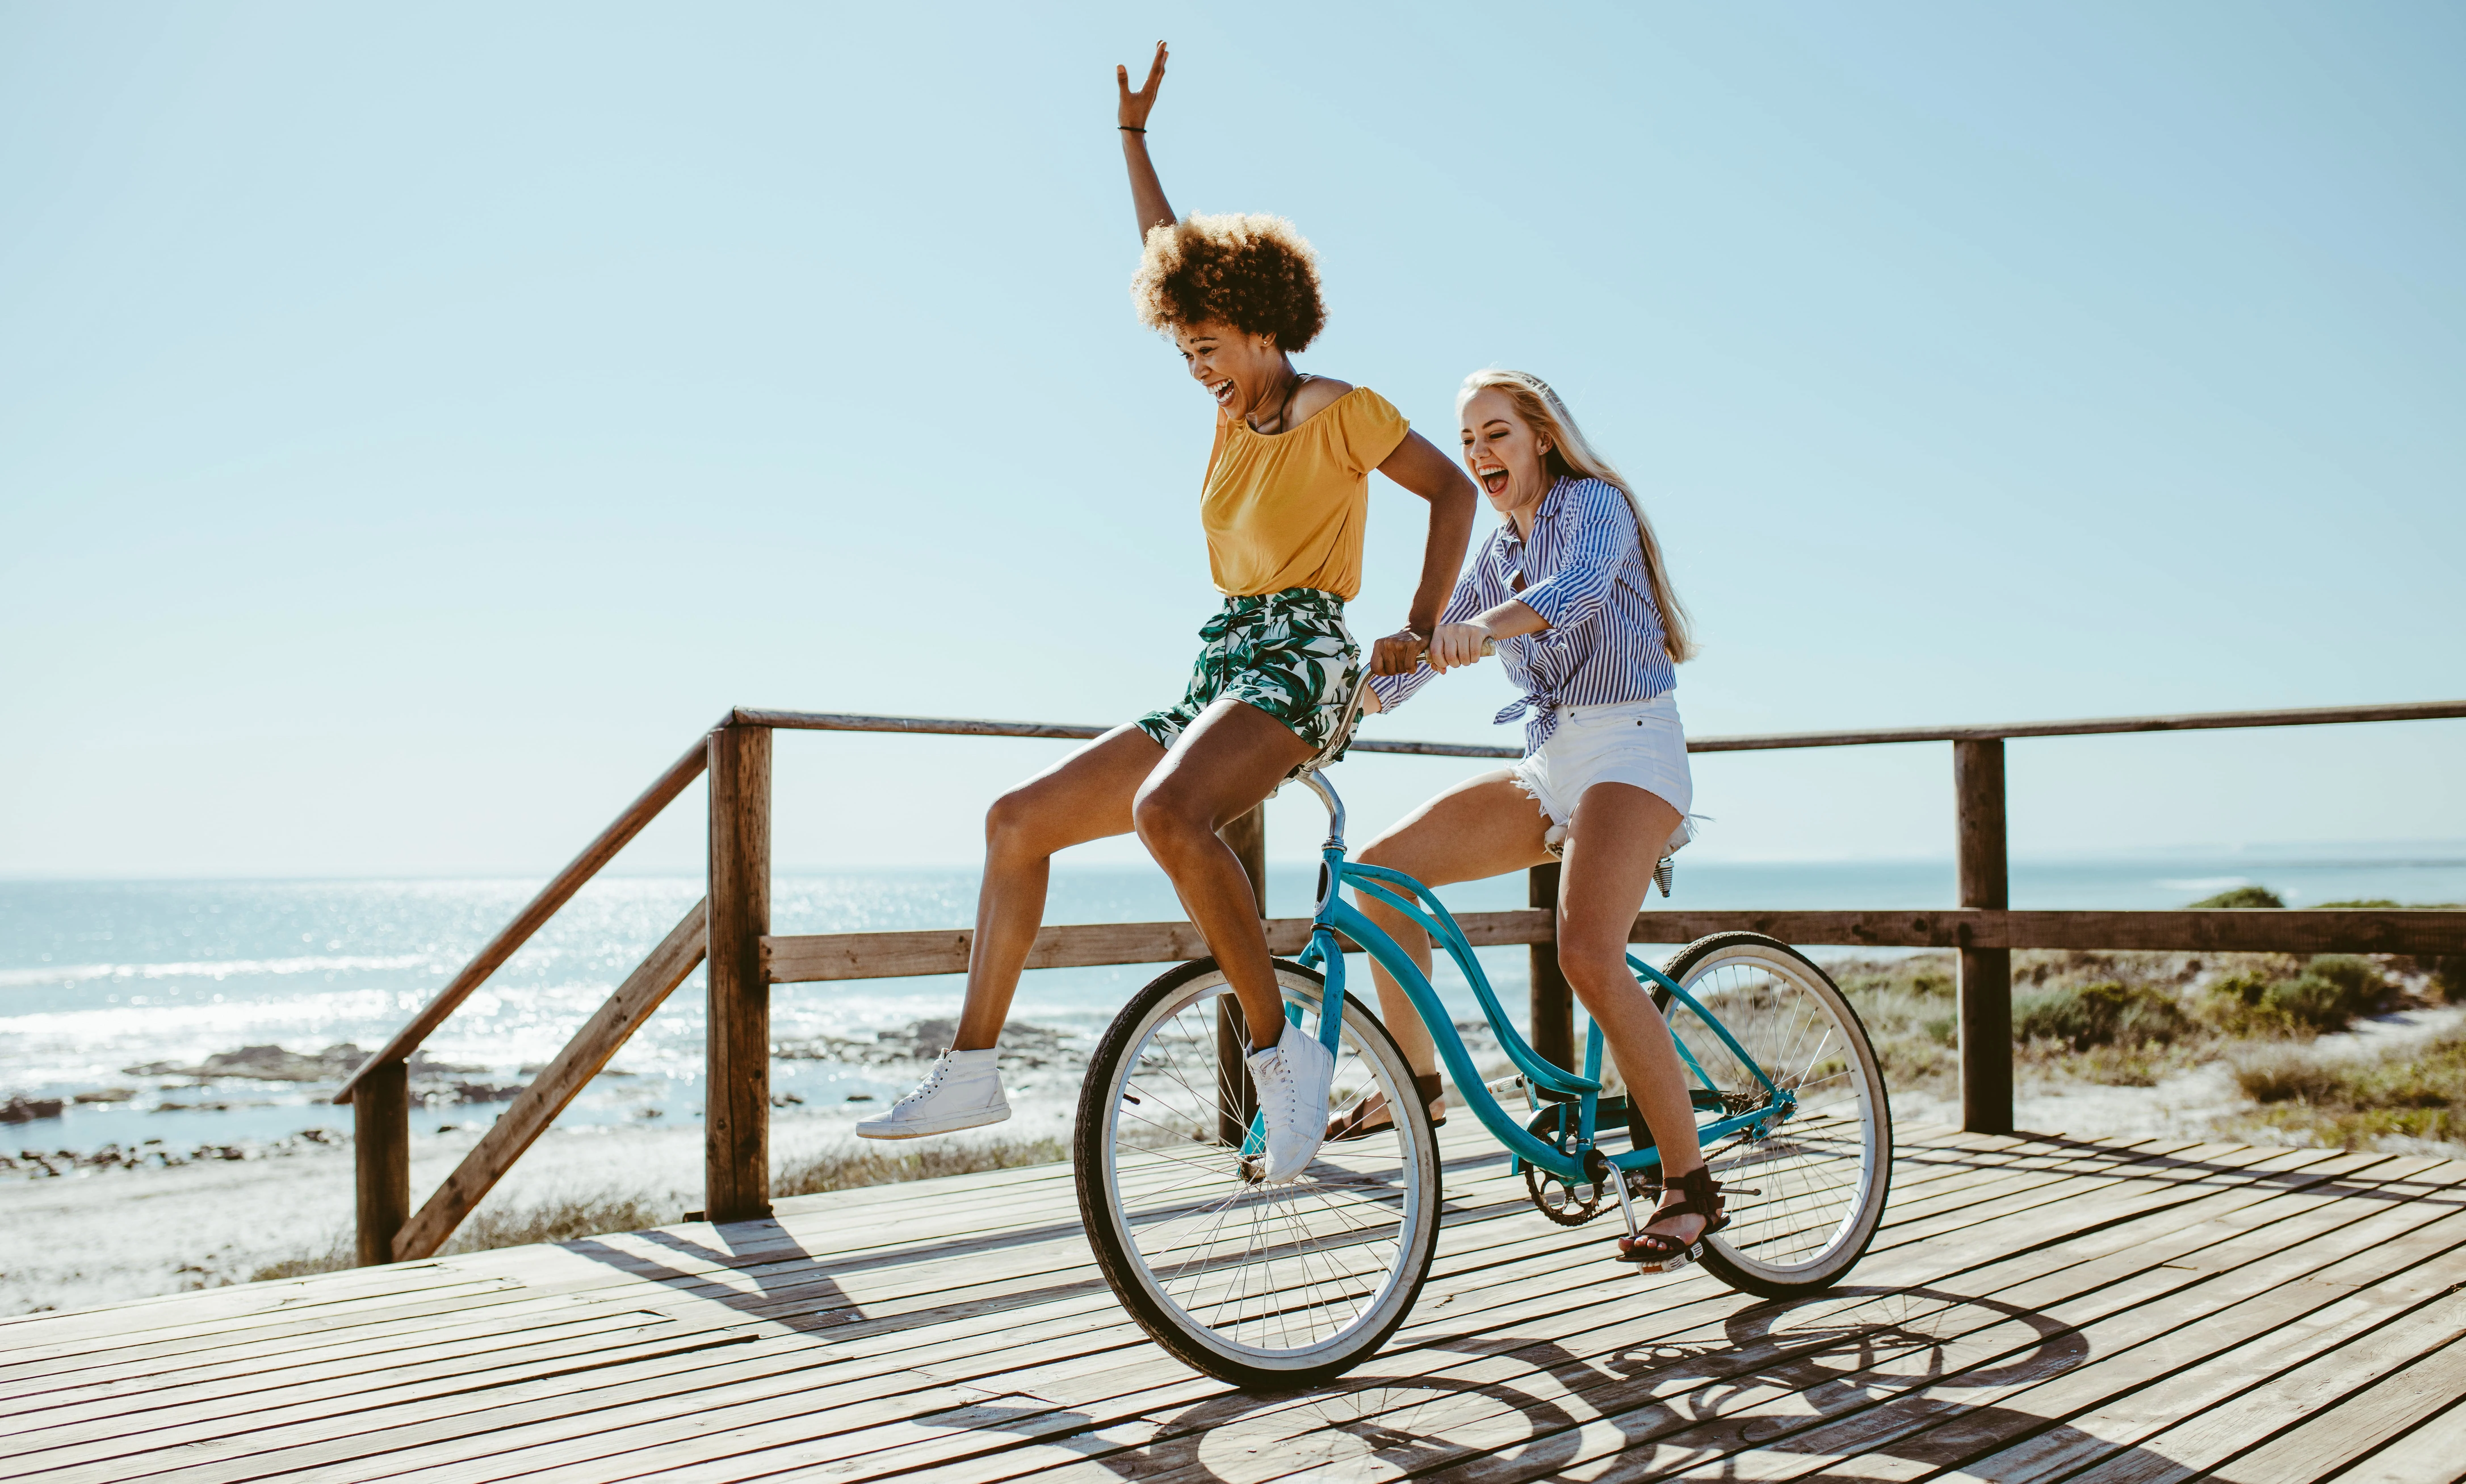 Two girls having fun on a bike near to the sea